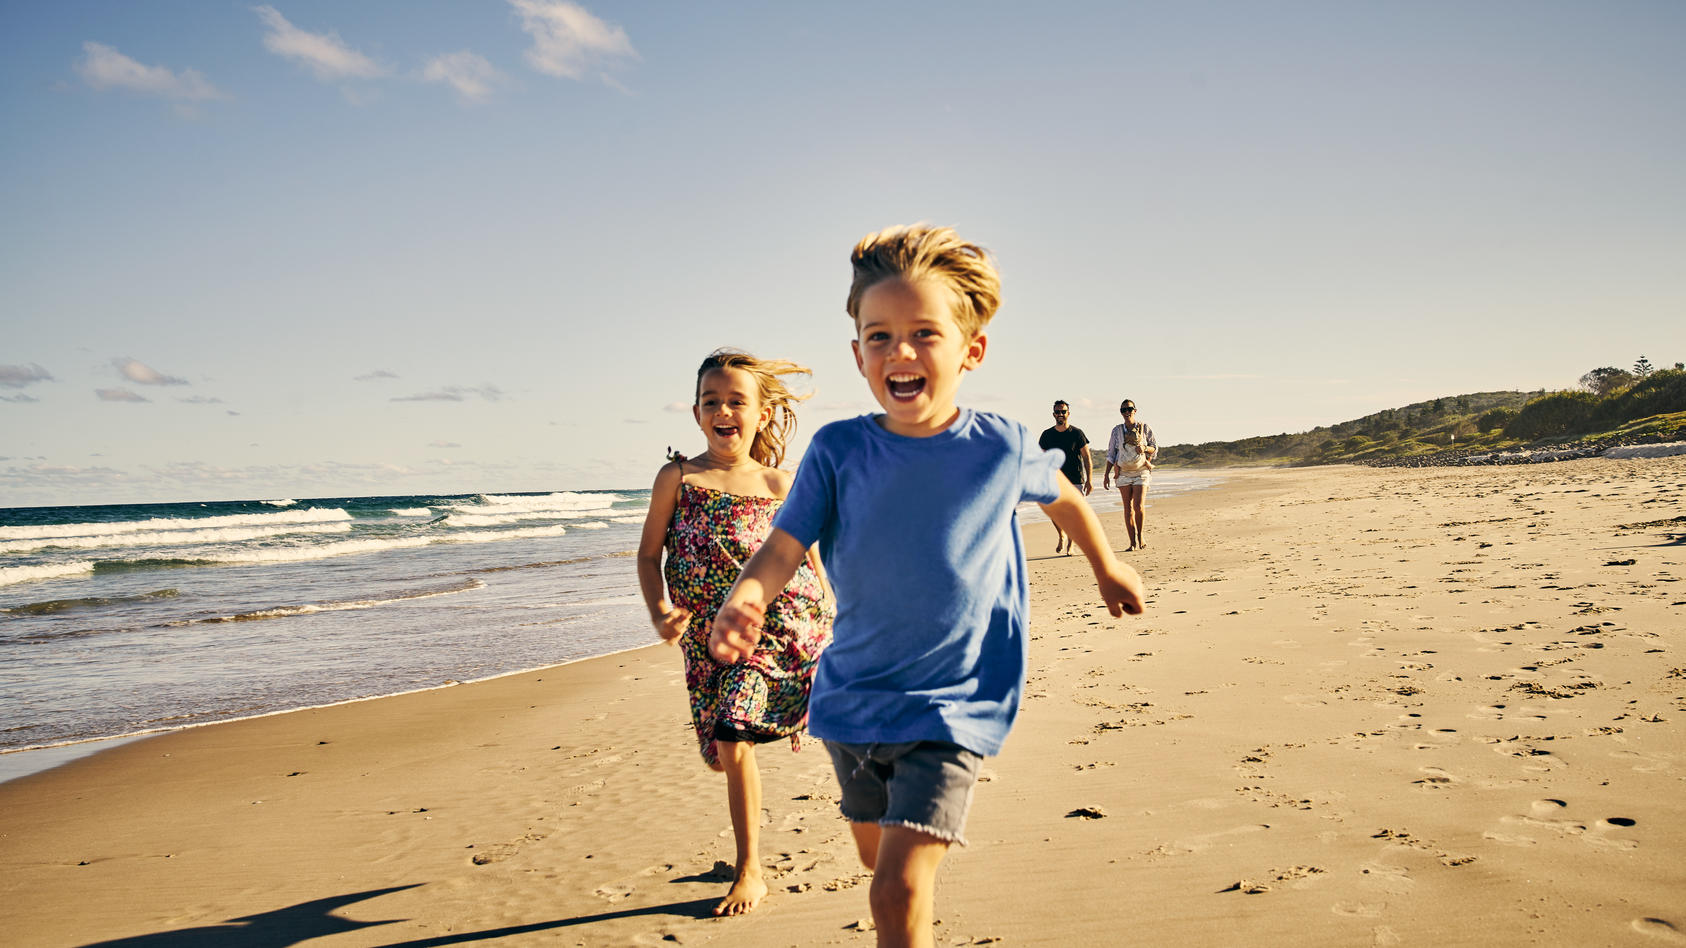 Kinder laufen glücklich am Strand entlang.